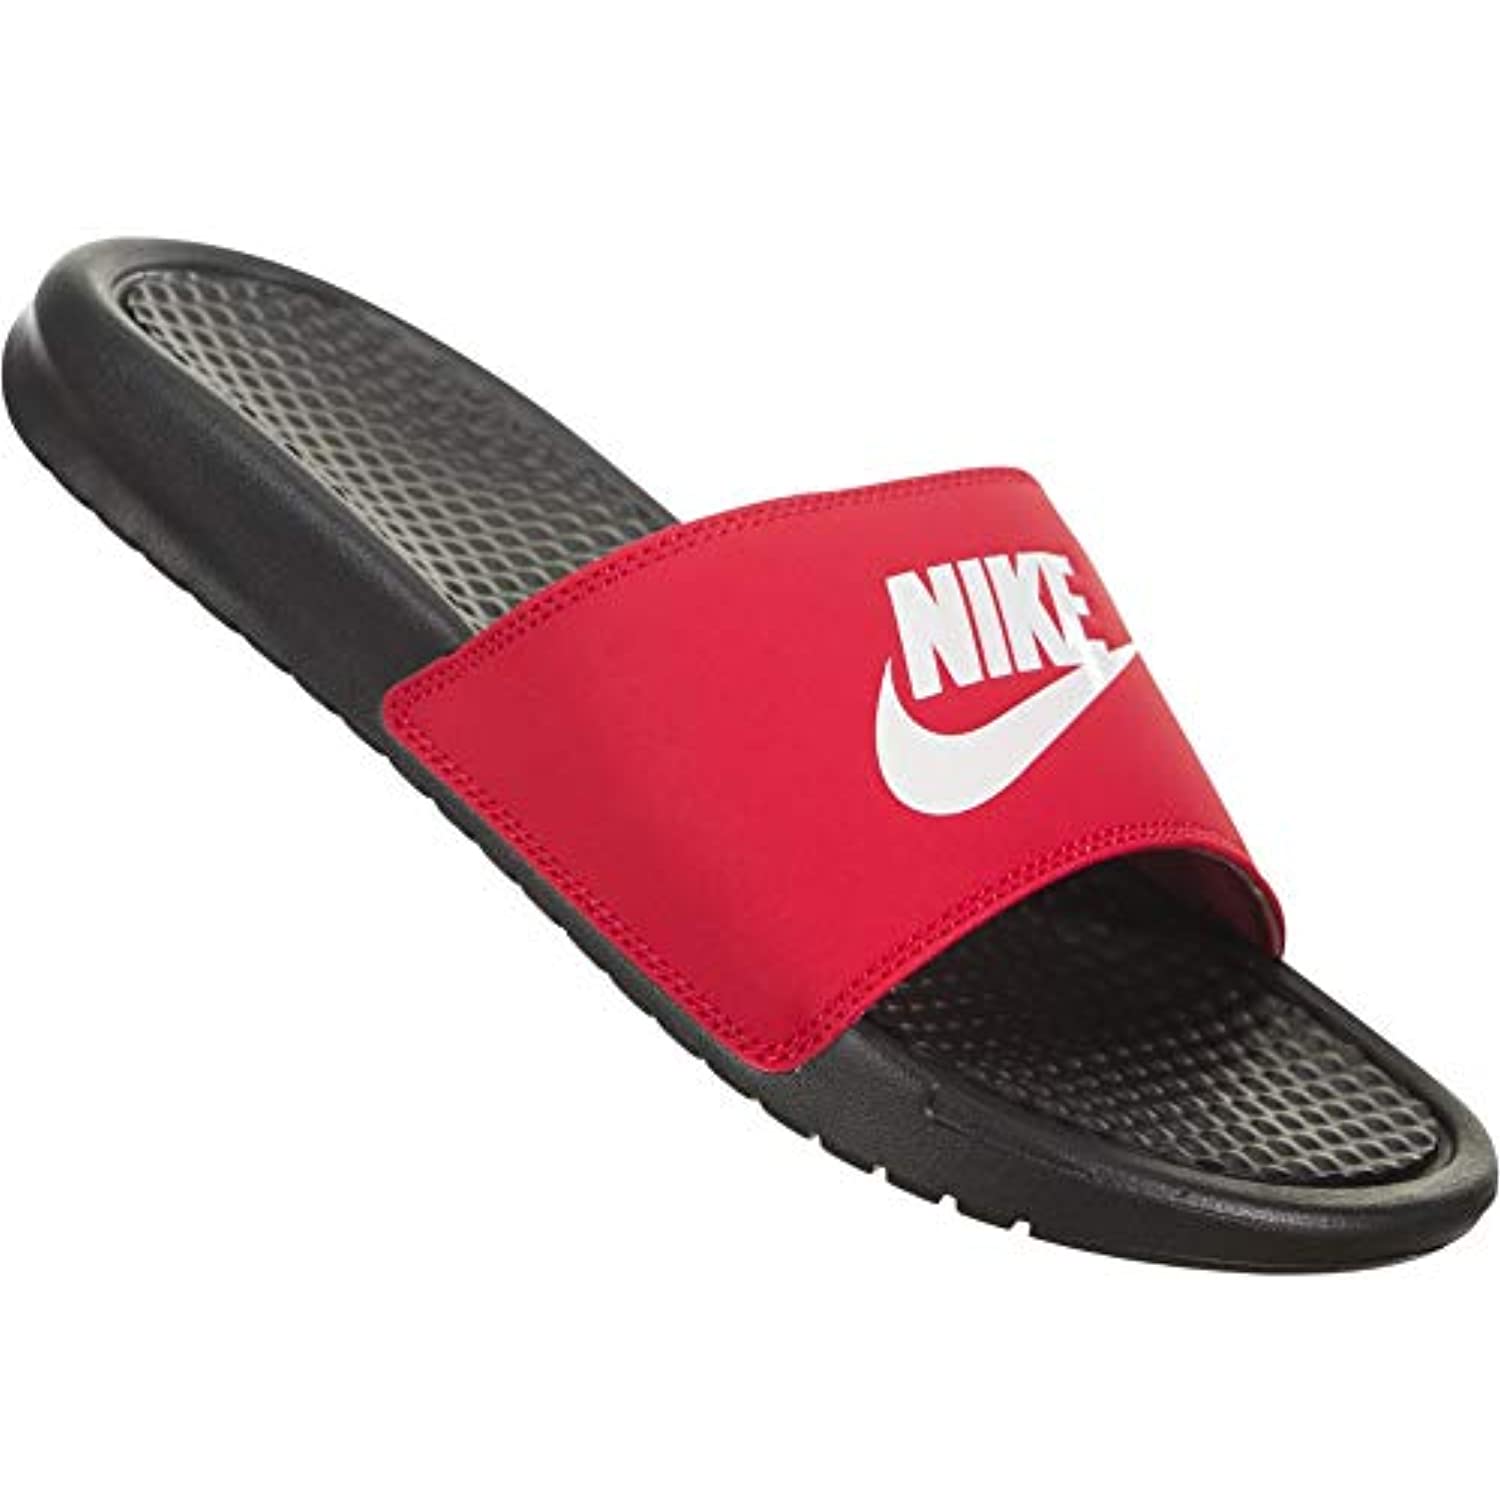 Nike Men's Benassi Just Do It Slide Sandal, Black/White-University Red, 12 Regular US - image 3 of 5